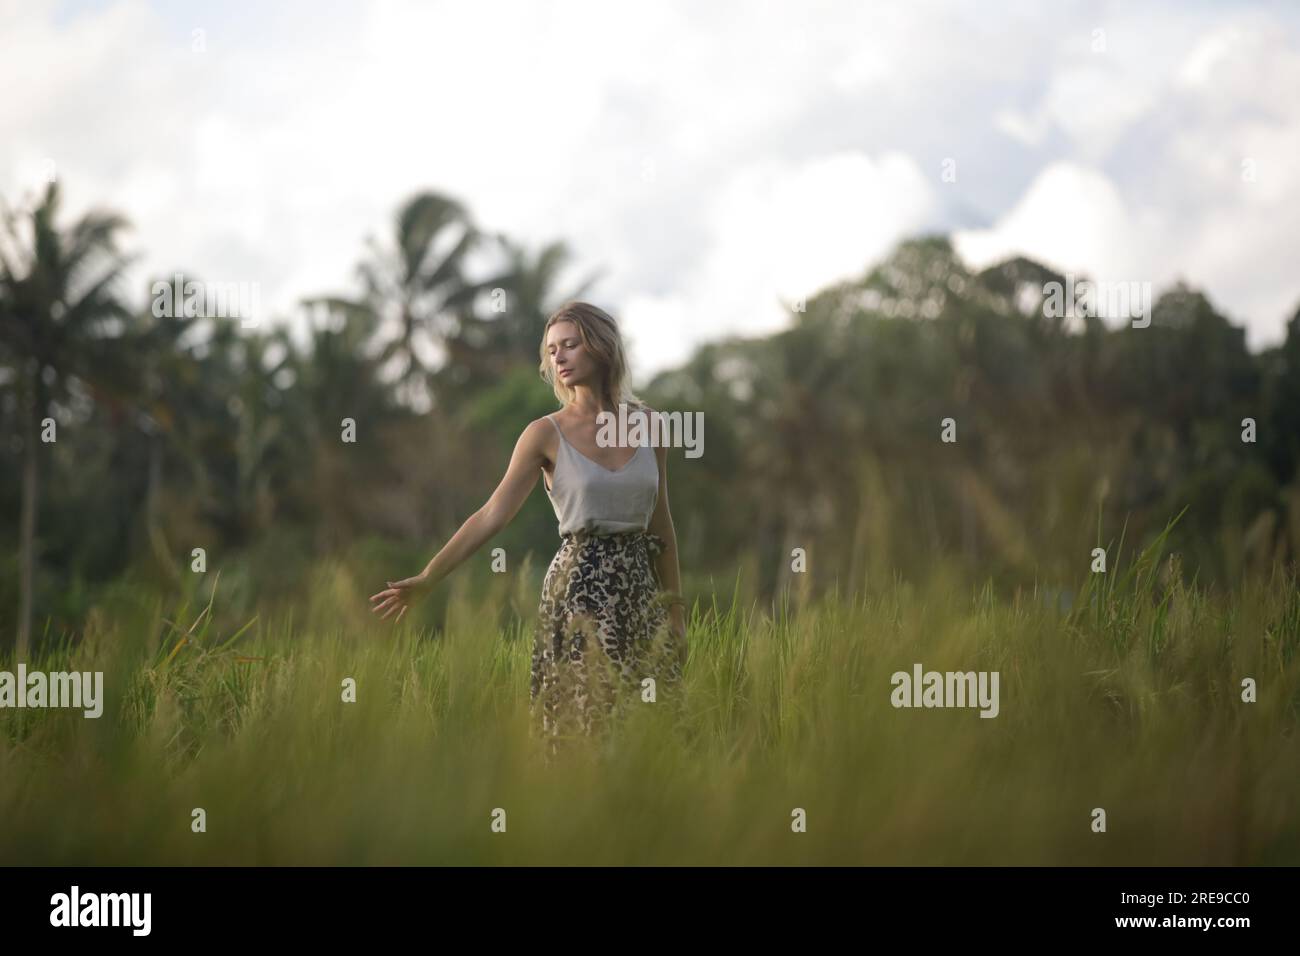 Outdoor-Modeporträt einer jungen Frau auf dem Reisfeld der tropischen Insel, natürliches Sonnenlicht. Konzept von Freiheit, Reisen, Umwelt, Verbindung Stockfoto